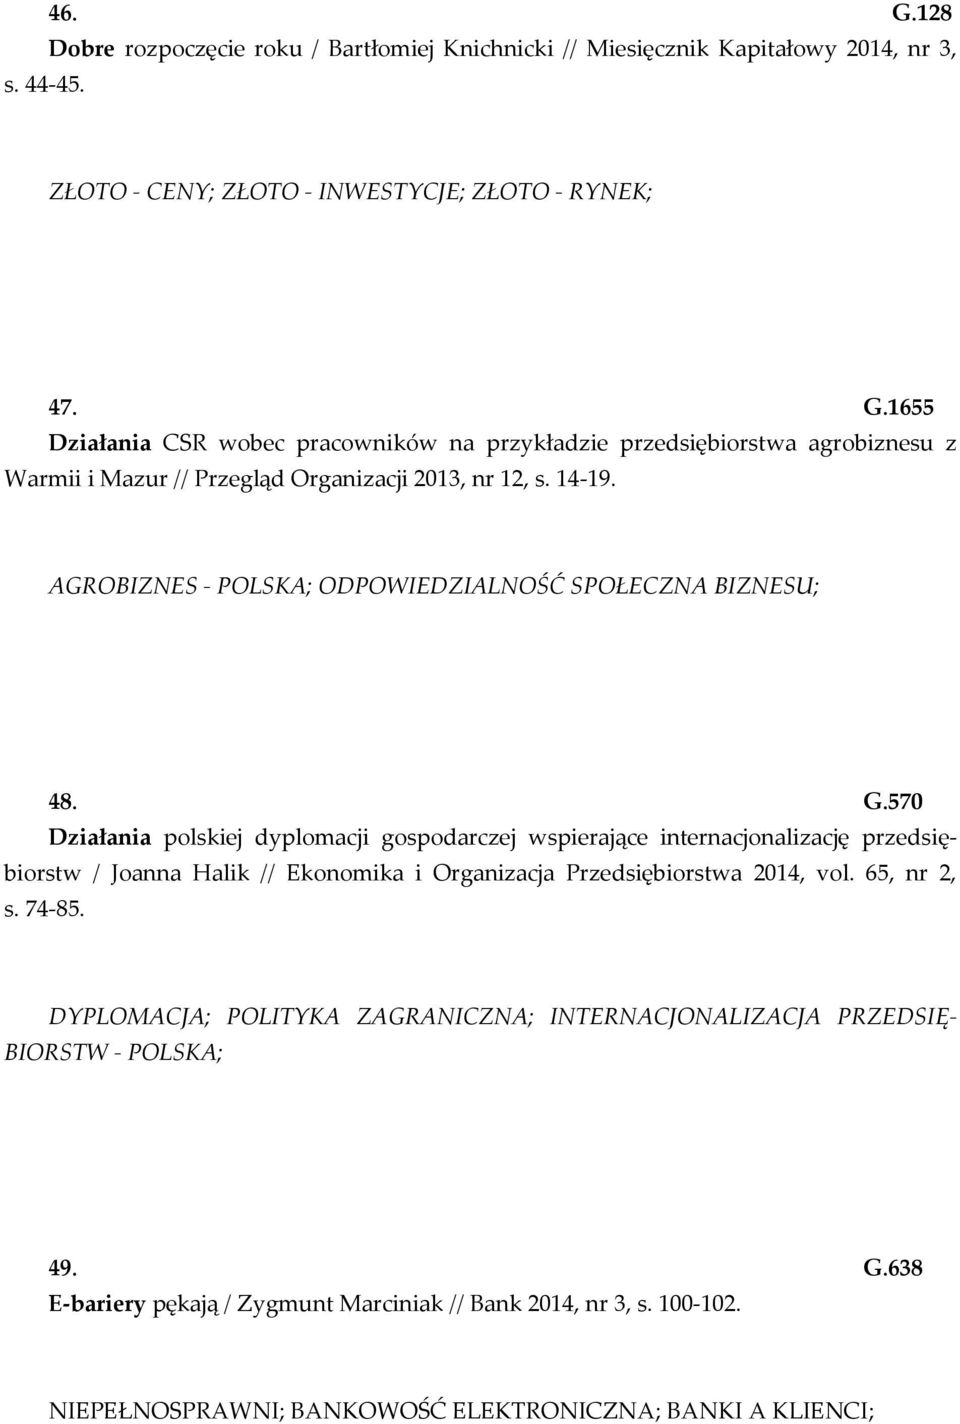 570 Działania polskiej dyplomacji gospodarczej wspierające internacjonalizację przedsiębiorstw / Joanna Halik // Ekonomika i Organizacja Przedsiębiorstwa 2014, vol. 65, nr 2, s. 74-85.